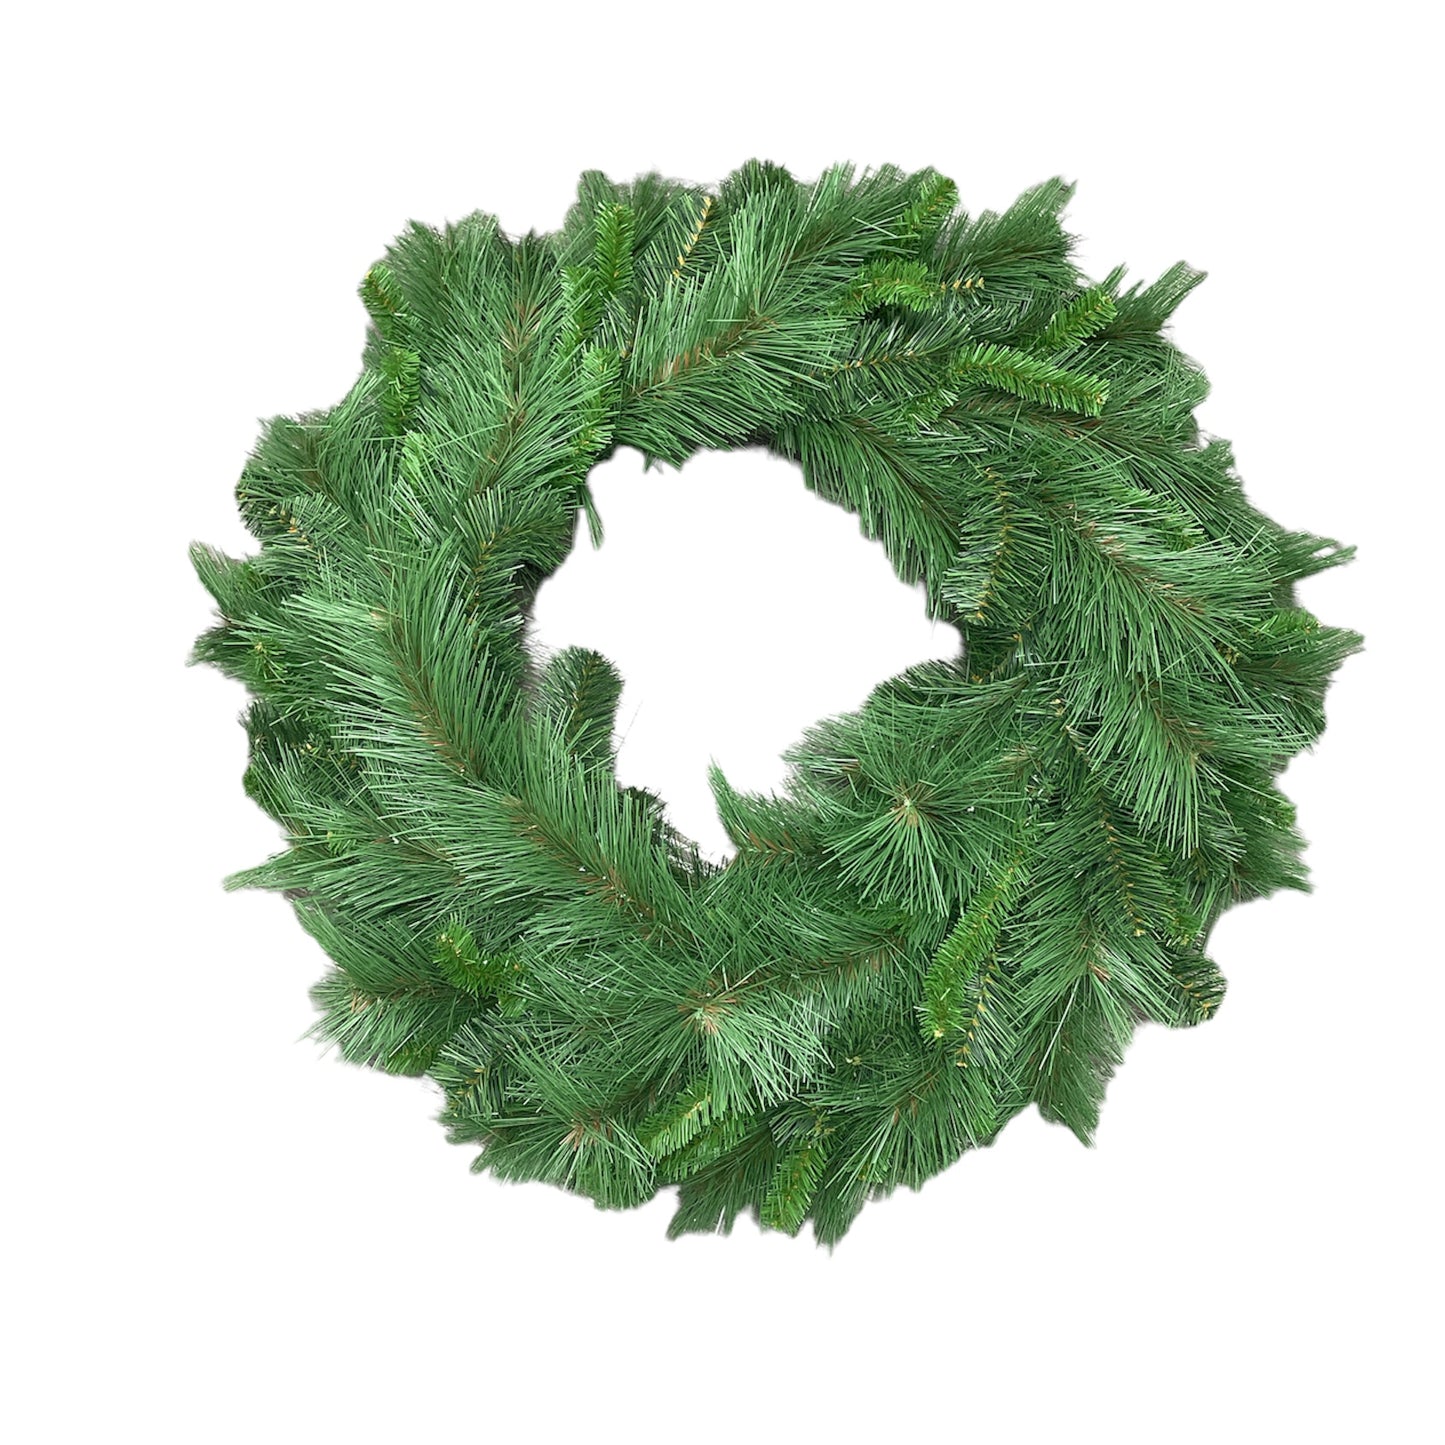 Bushy Pine Wreath